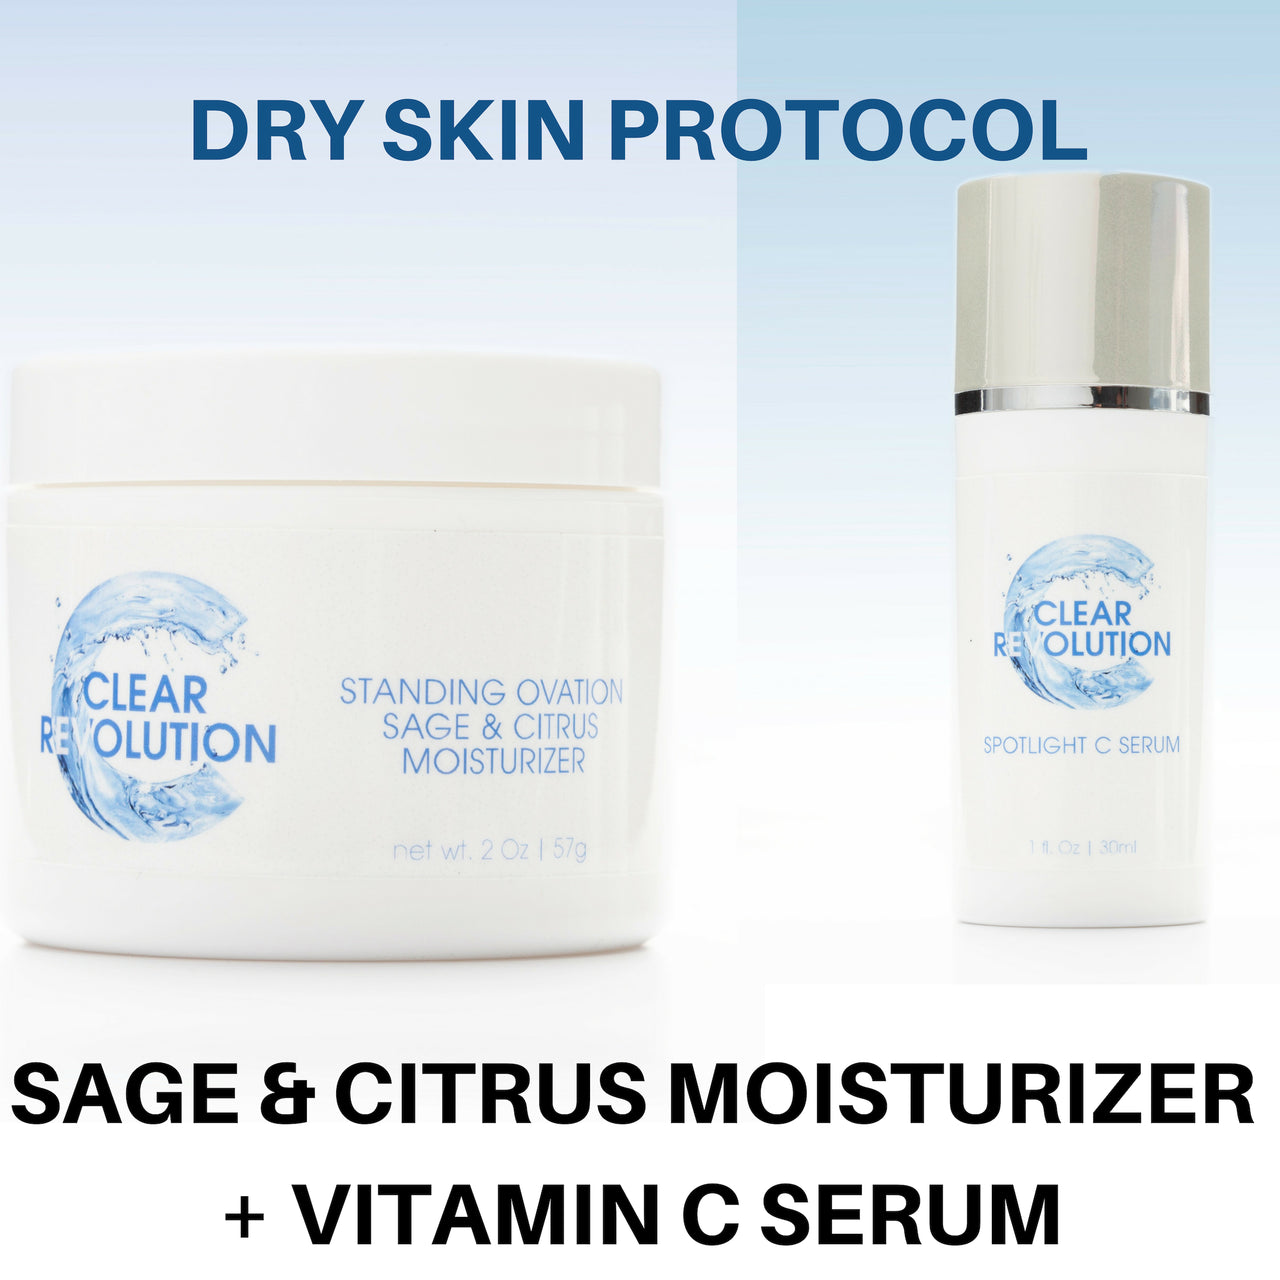 Dry Skin Protocol